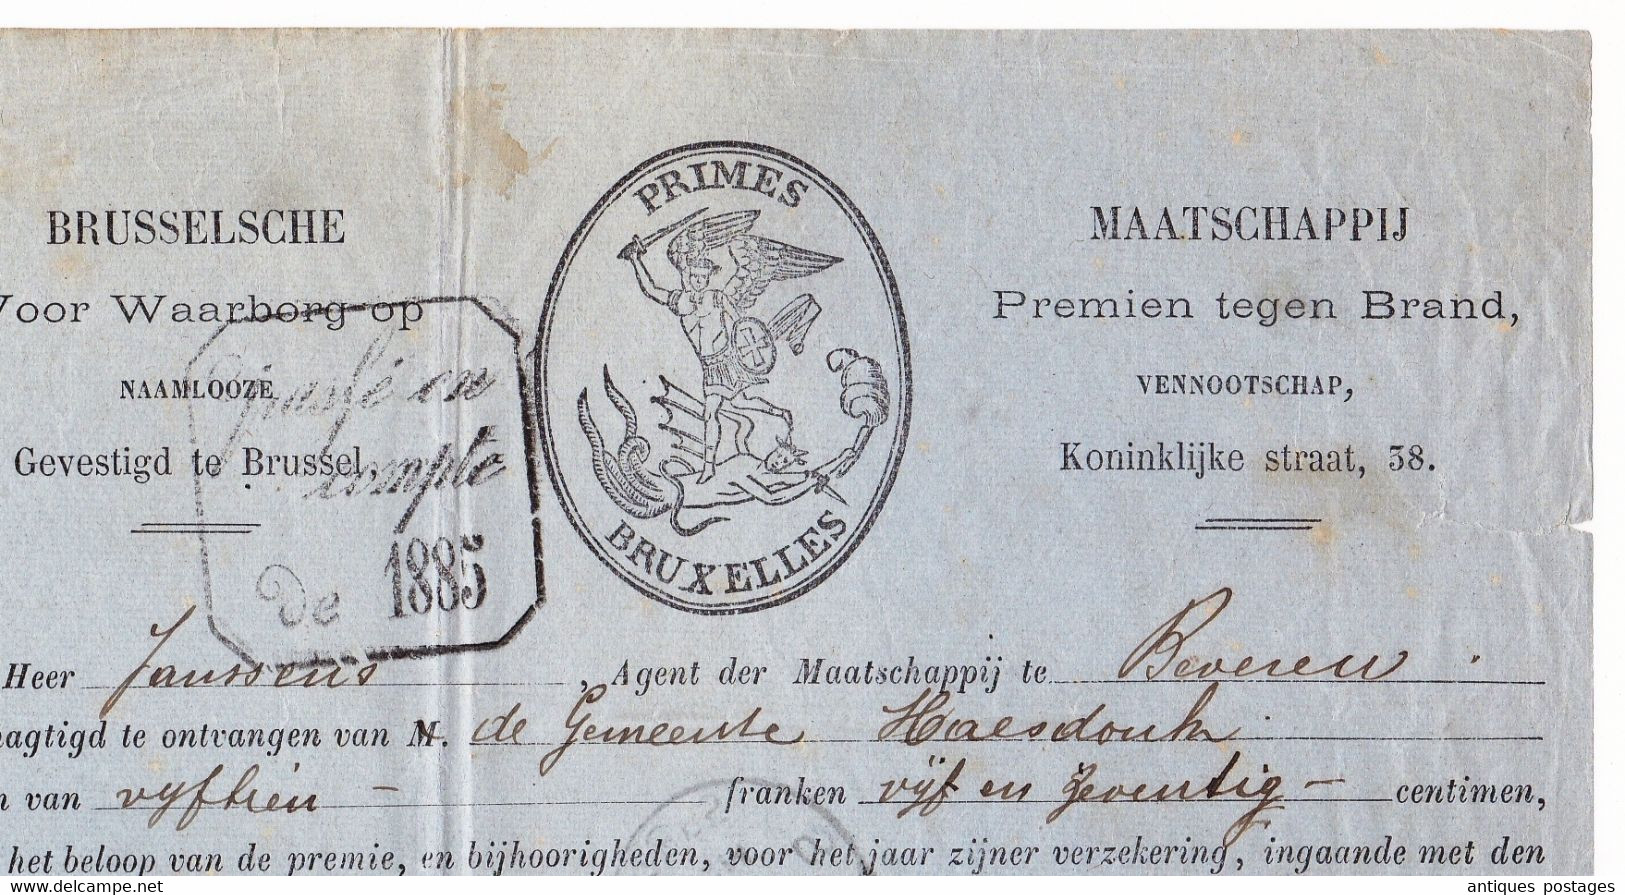 Belgique 1885 Primes Bruxelles Saint-Nicolas Beveren Maatschappij Premien Tegen Brand - 1883 Leopold II